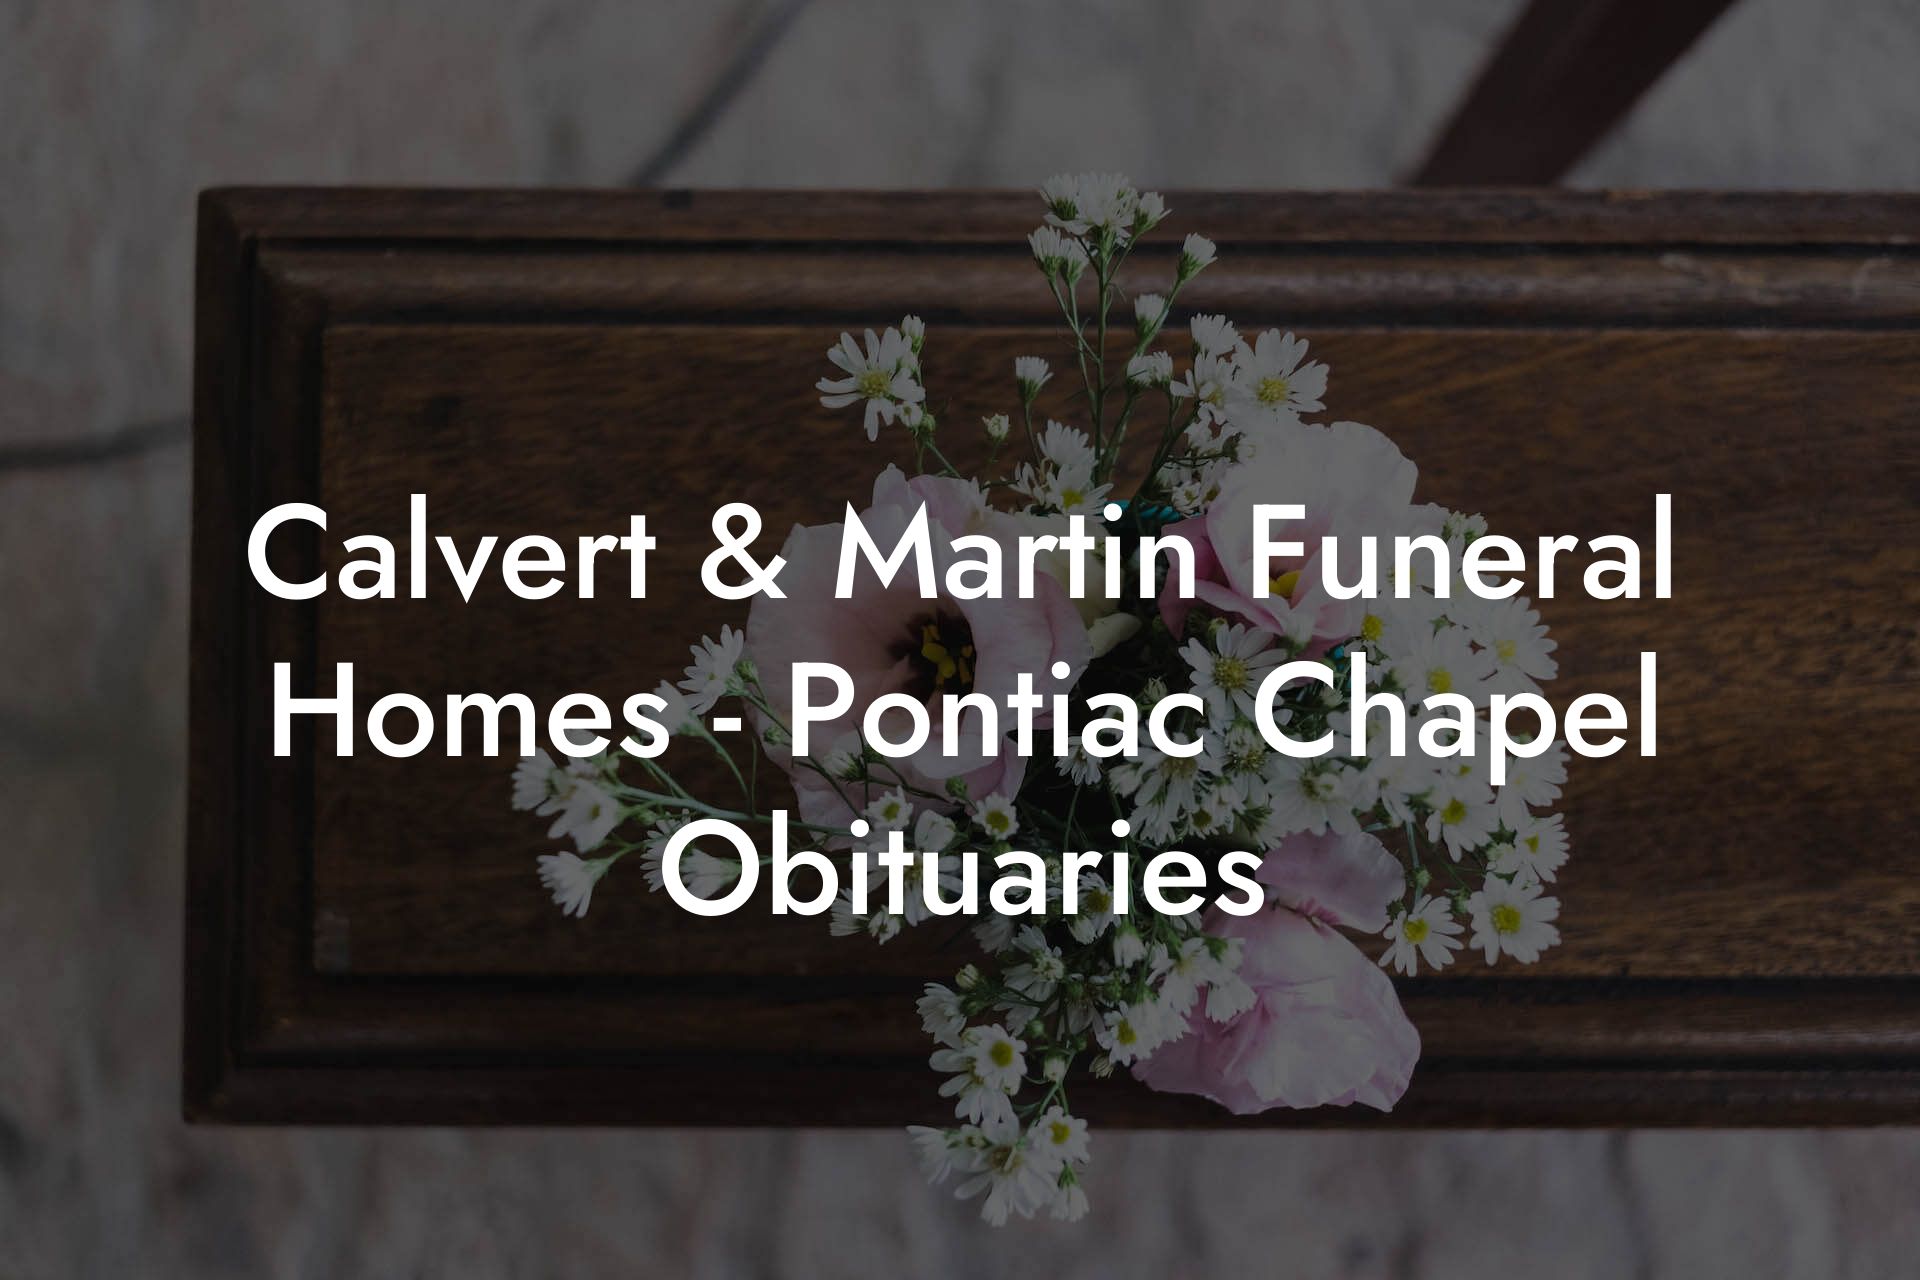 Calvert & Martin Funeral Homes - Pontiac Chapel Obituaries